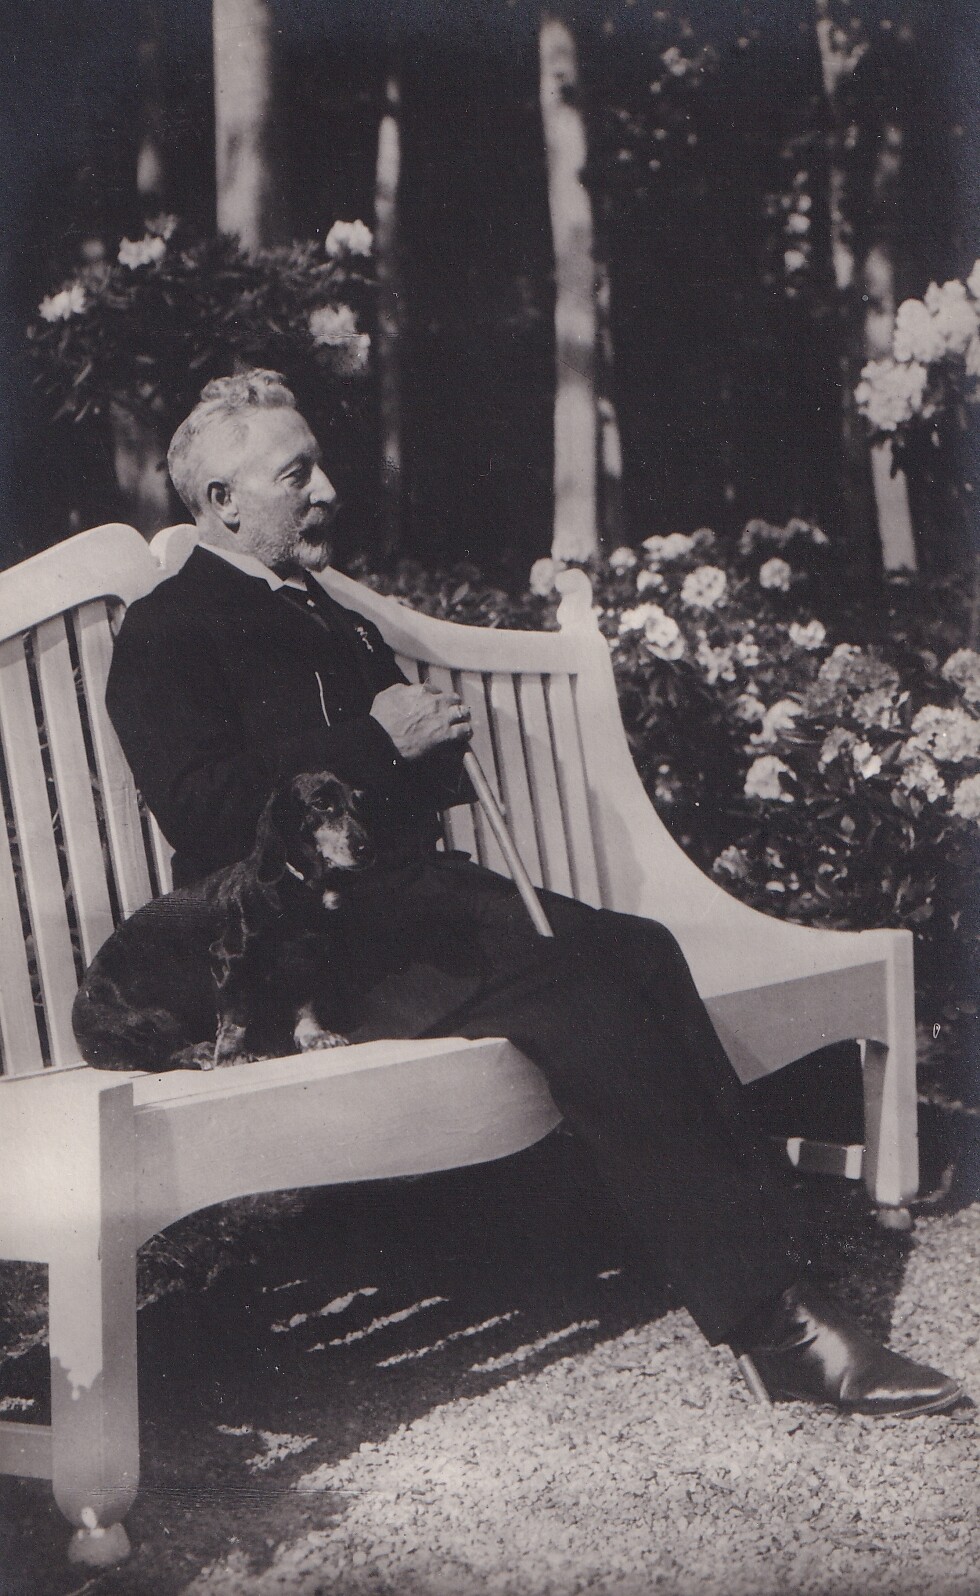 Bildpostkarte mit Foto des Ex-Kaisers Wilhelm II. (1859-1941) im niederländischen Exil, 1922 (Schloß Wernigerode GmbH RR-F)